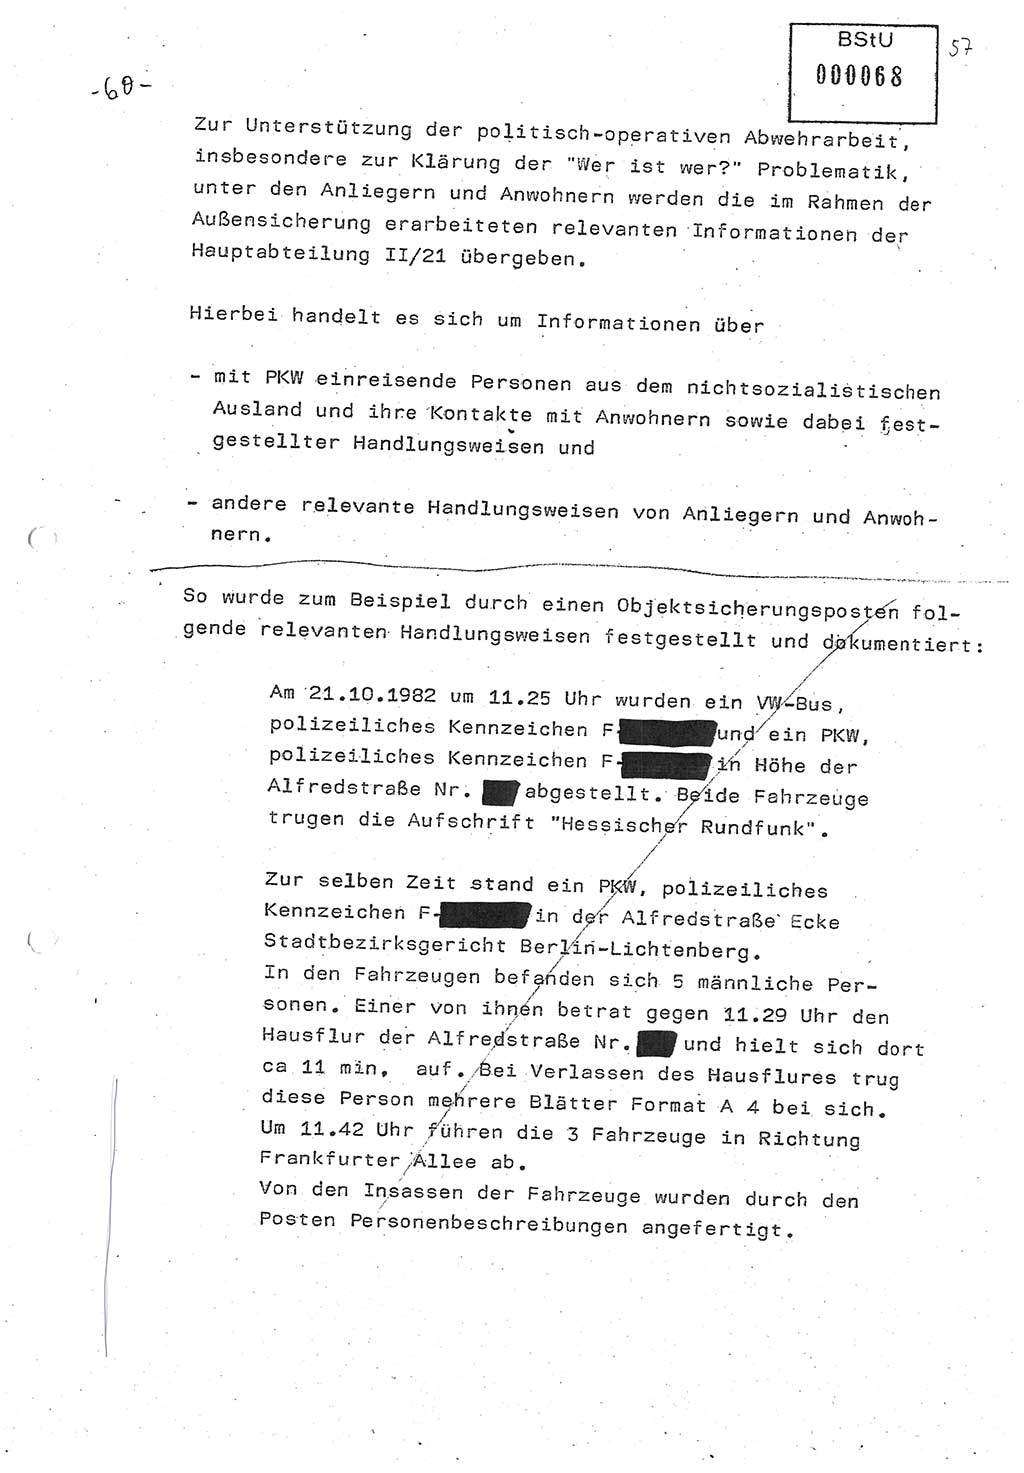 Diplomarbeit (Entwurf) Oberleutnant Peter Parke (Abt. ⅩⅣ), Ministerium für Staatssicherheit (MfS) [Deutsche Demokratische Republik (DDR)], Juristische Hochschule (JHS), Geheime Verschlußsache (GVS) o001-98/86, Potsdam 1986, Seite 68 (Dipl.-Arb. MfS DDR JHS GVS o001-98/86 1986, S. 68)